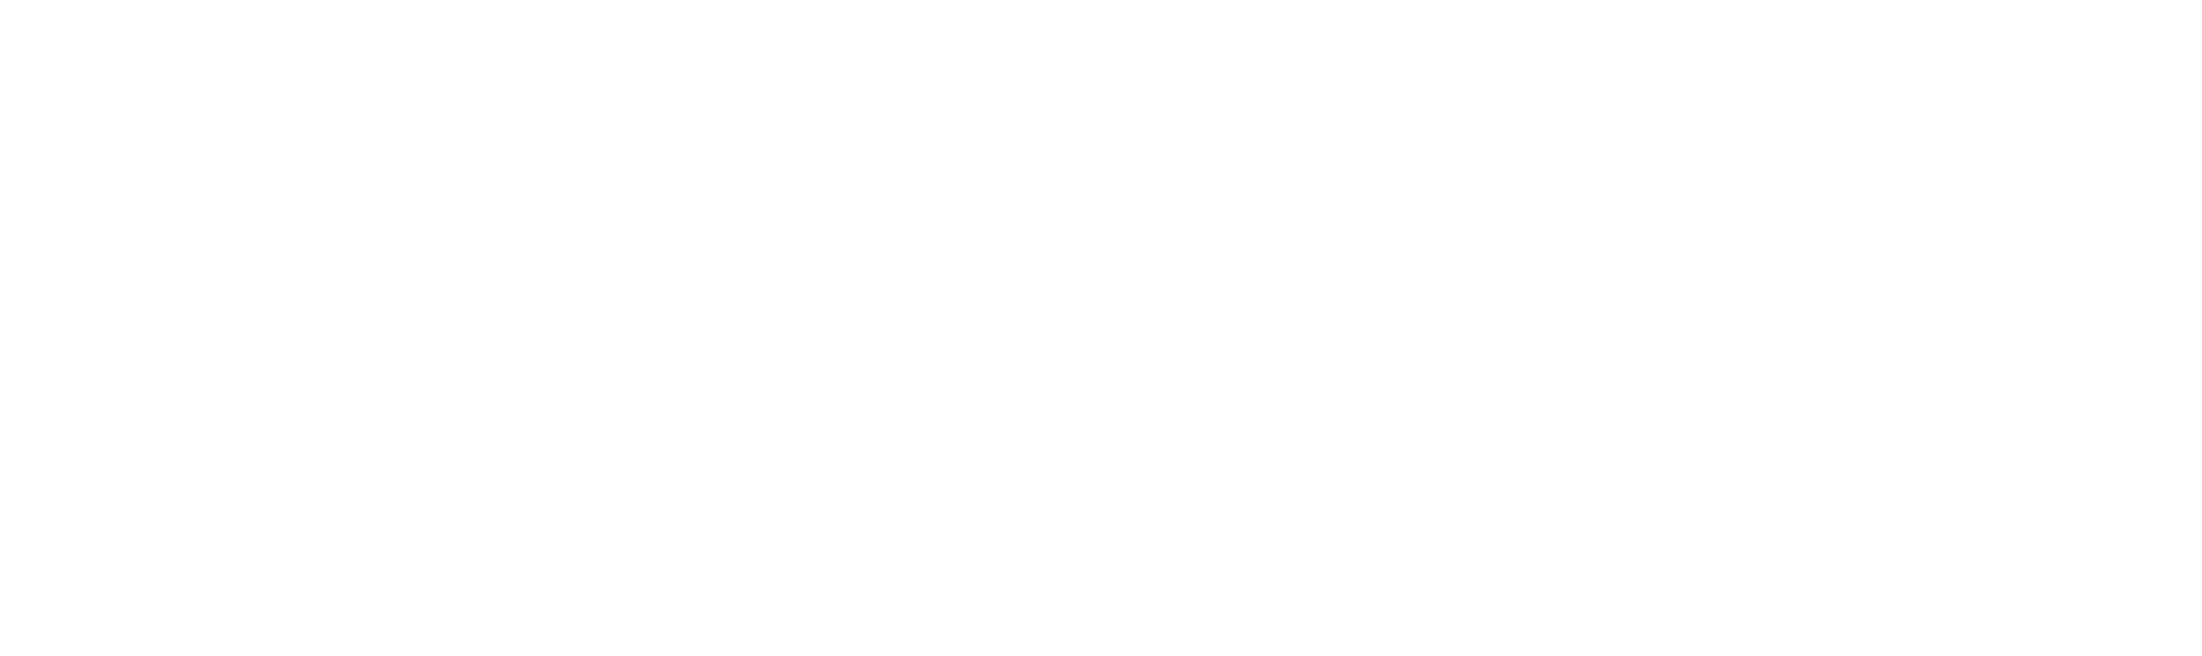 Top Knotch Fence Logo